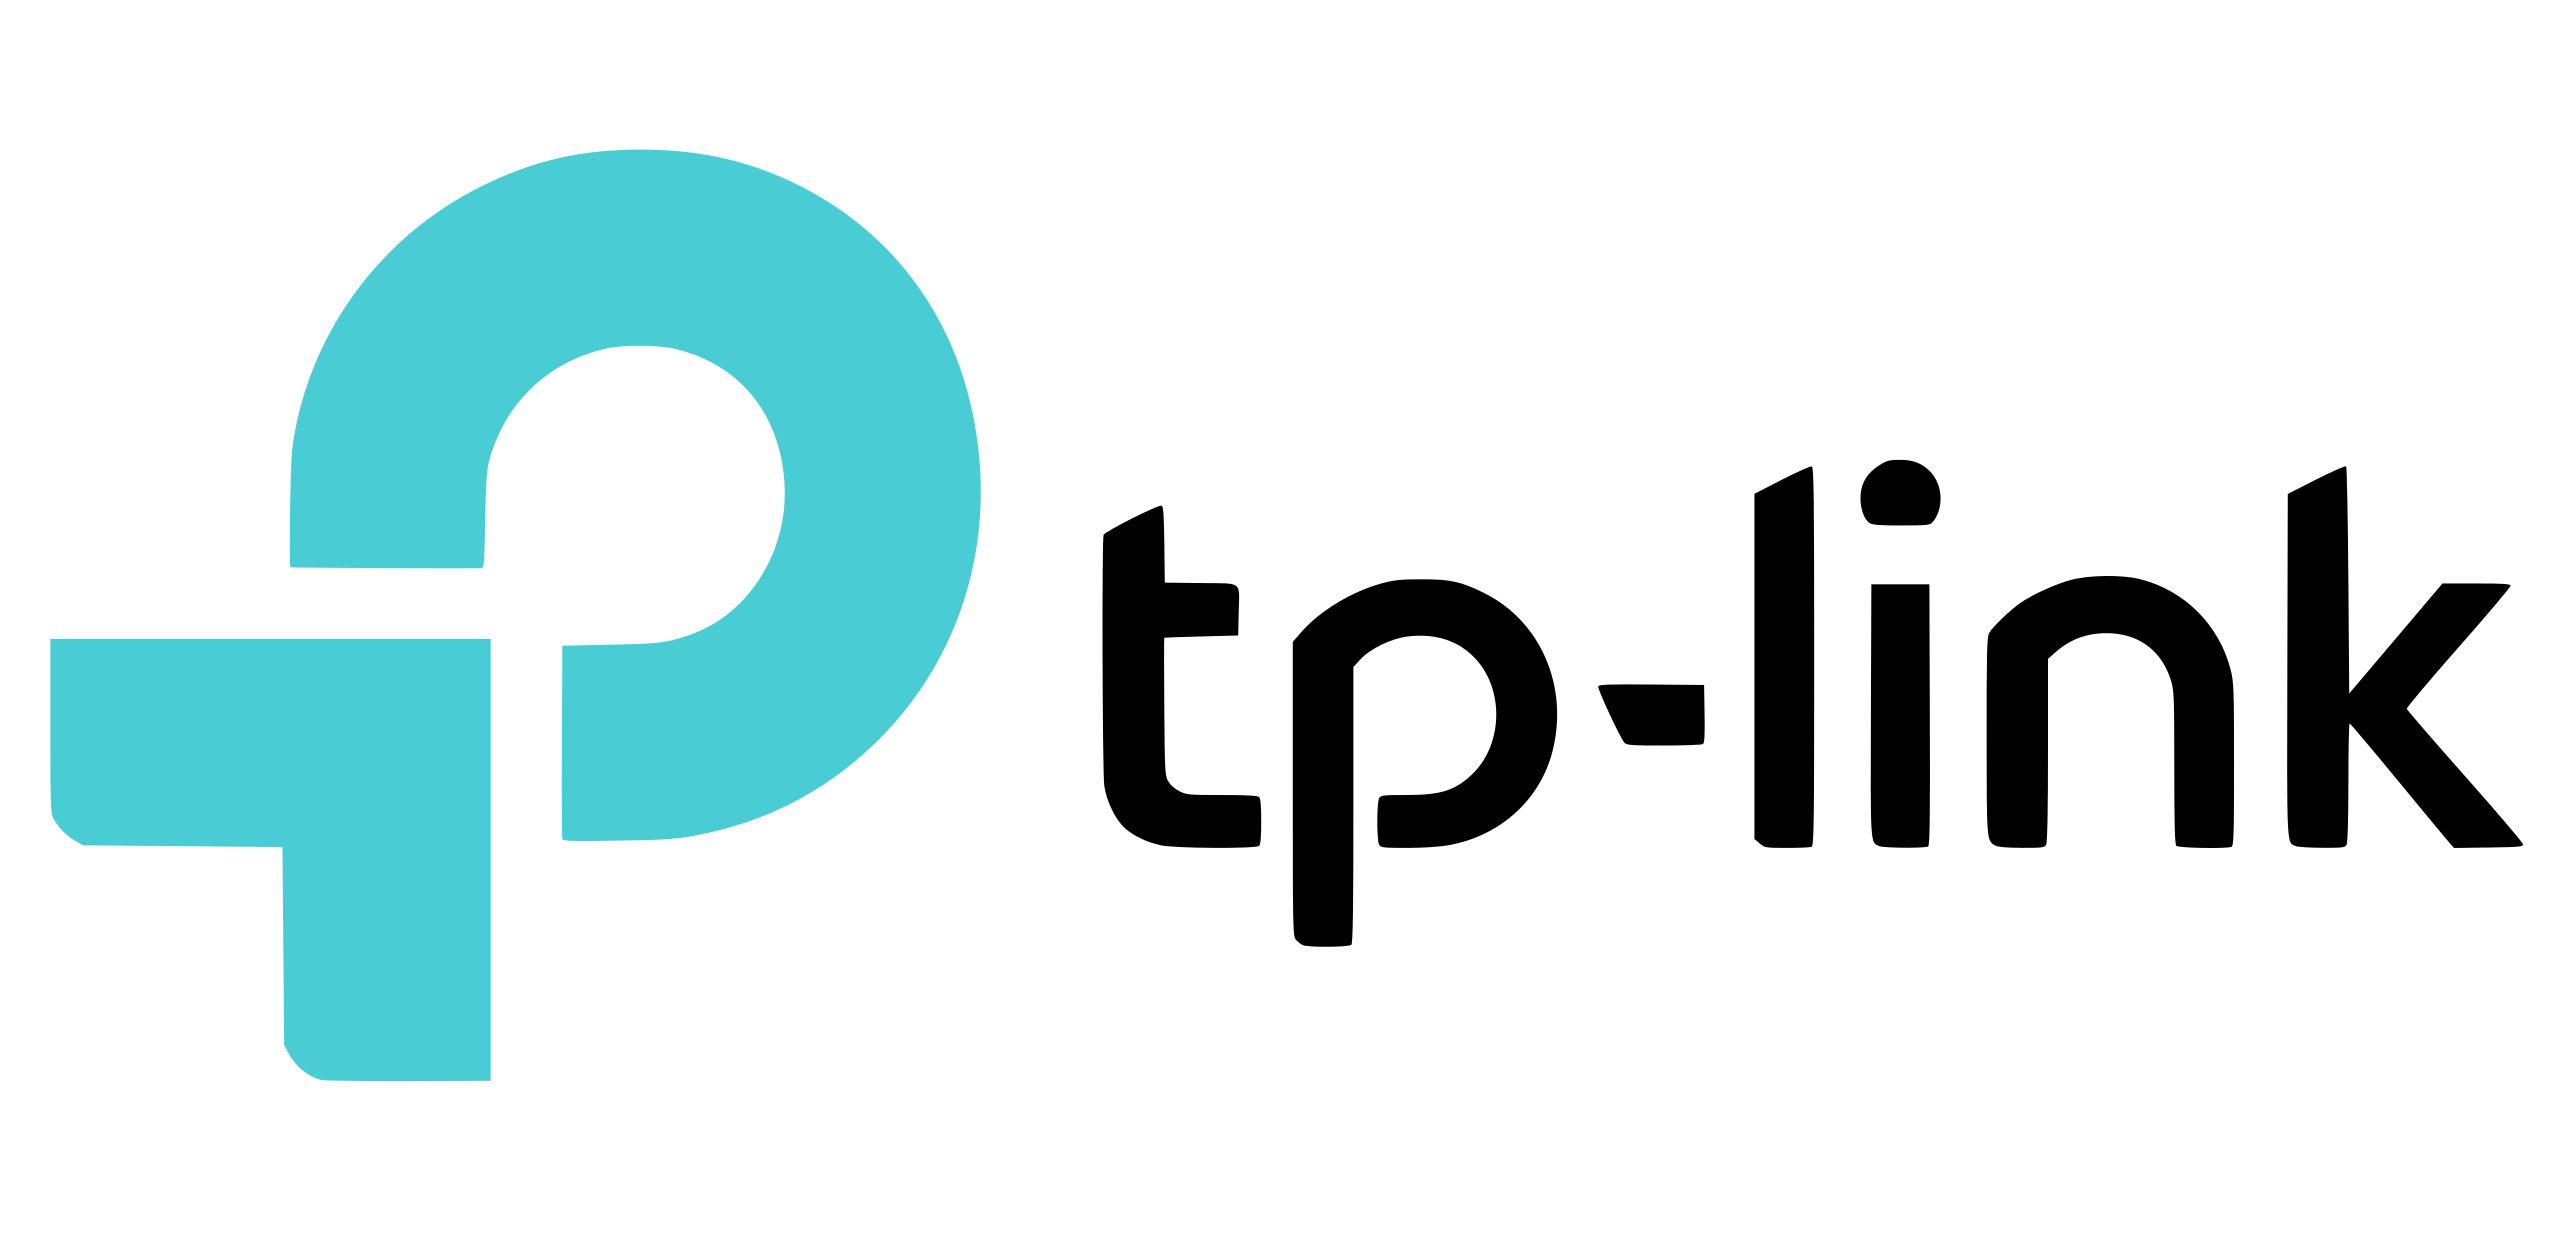 tp-link-logo